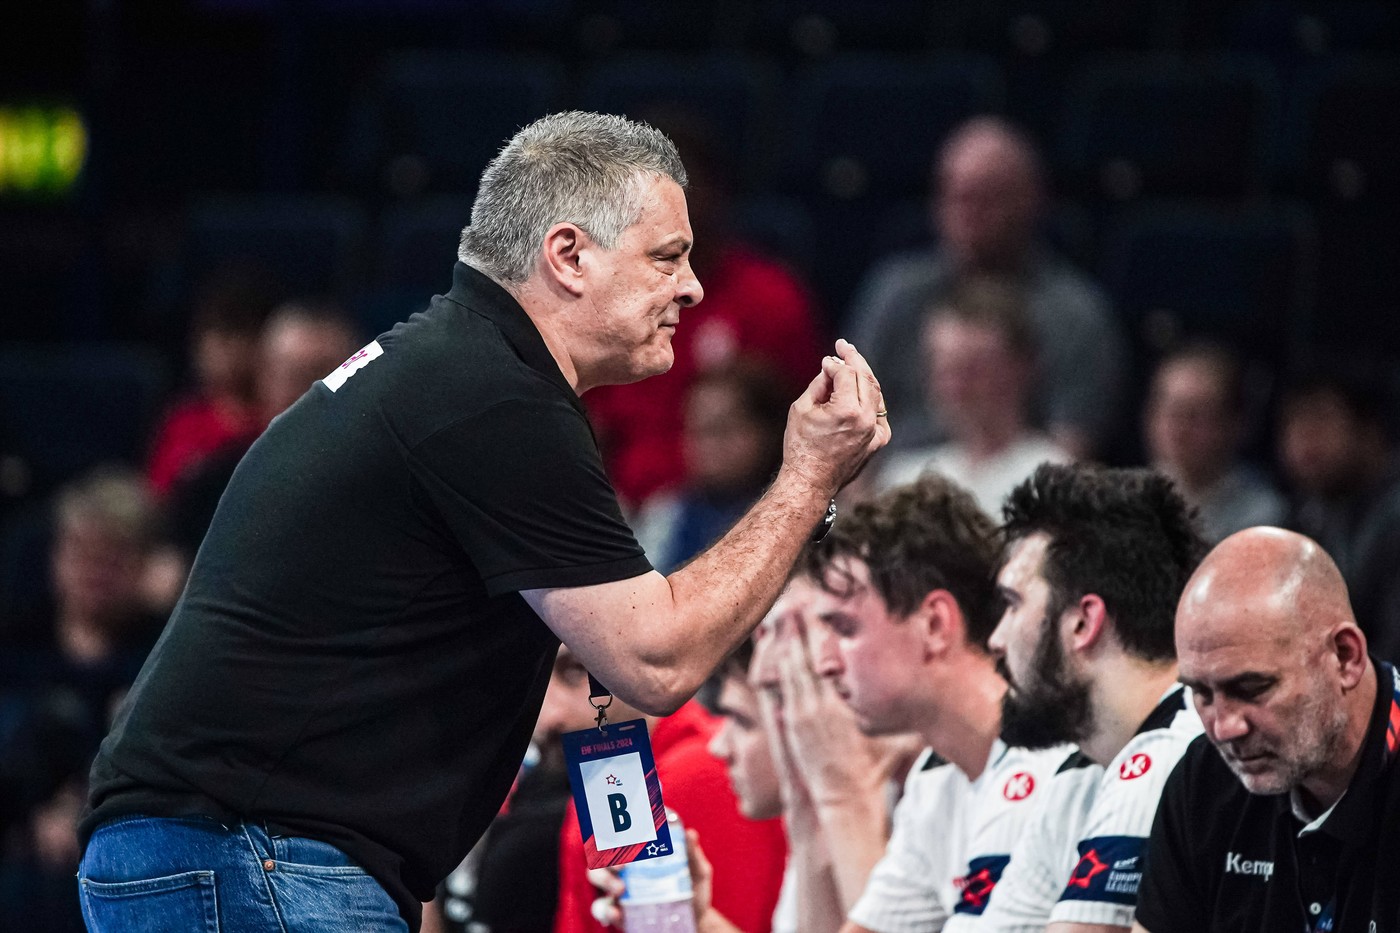 Xavi Pascual, după ce Dinamo a ratat calificarea în finala EHF European League: ”Imposibil!” / ”Nu ne-a ajutat”